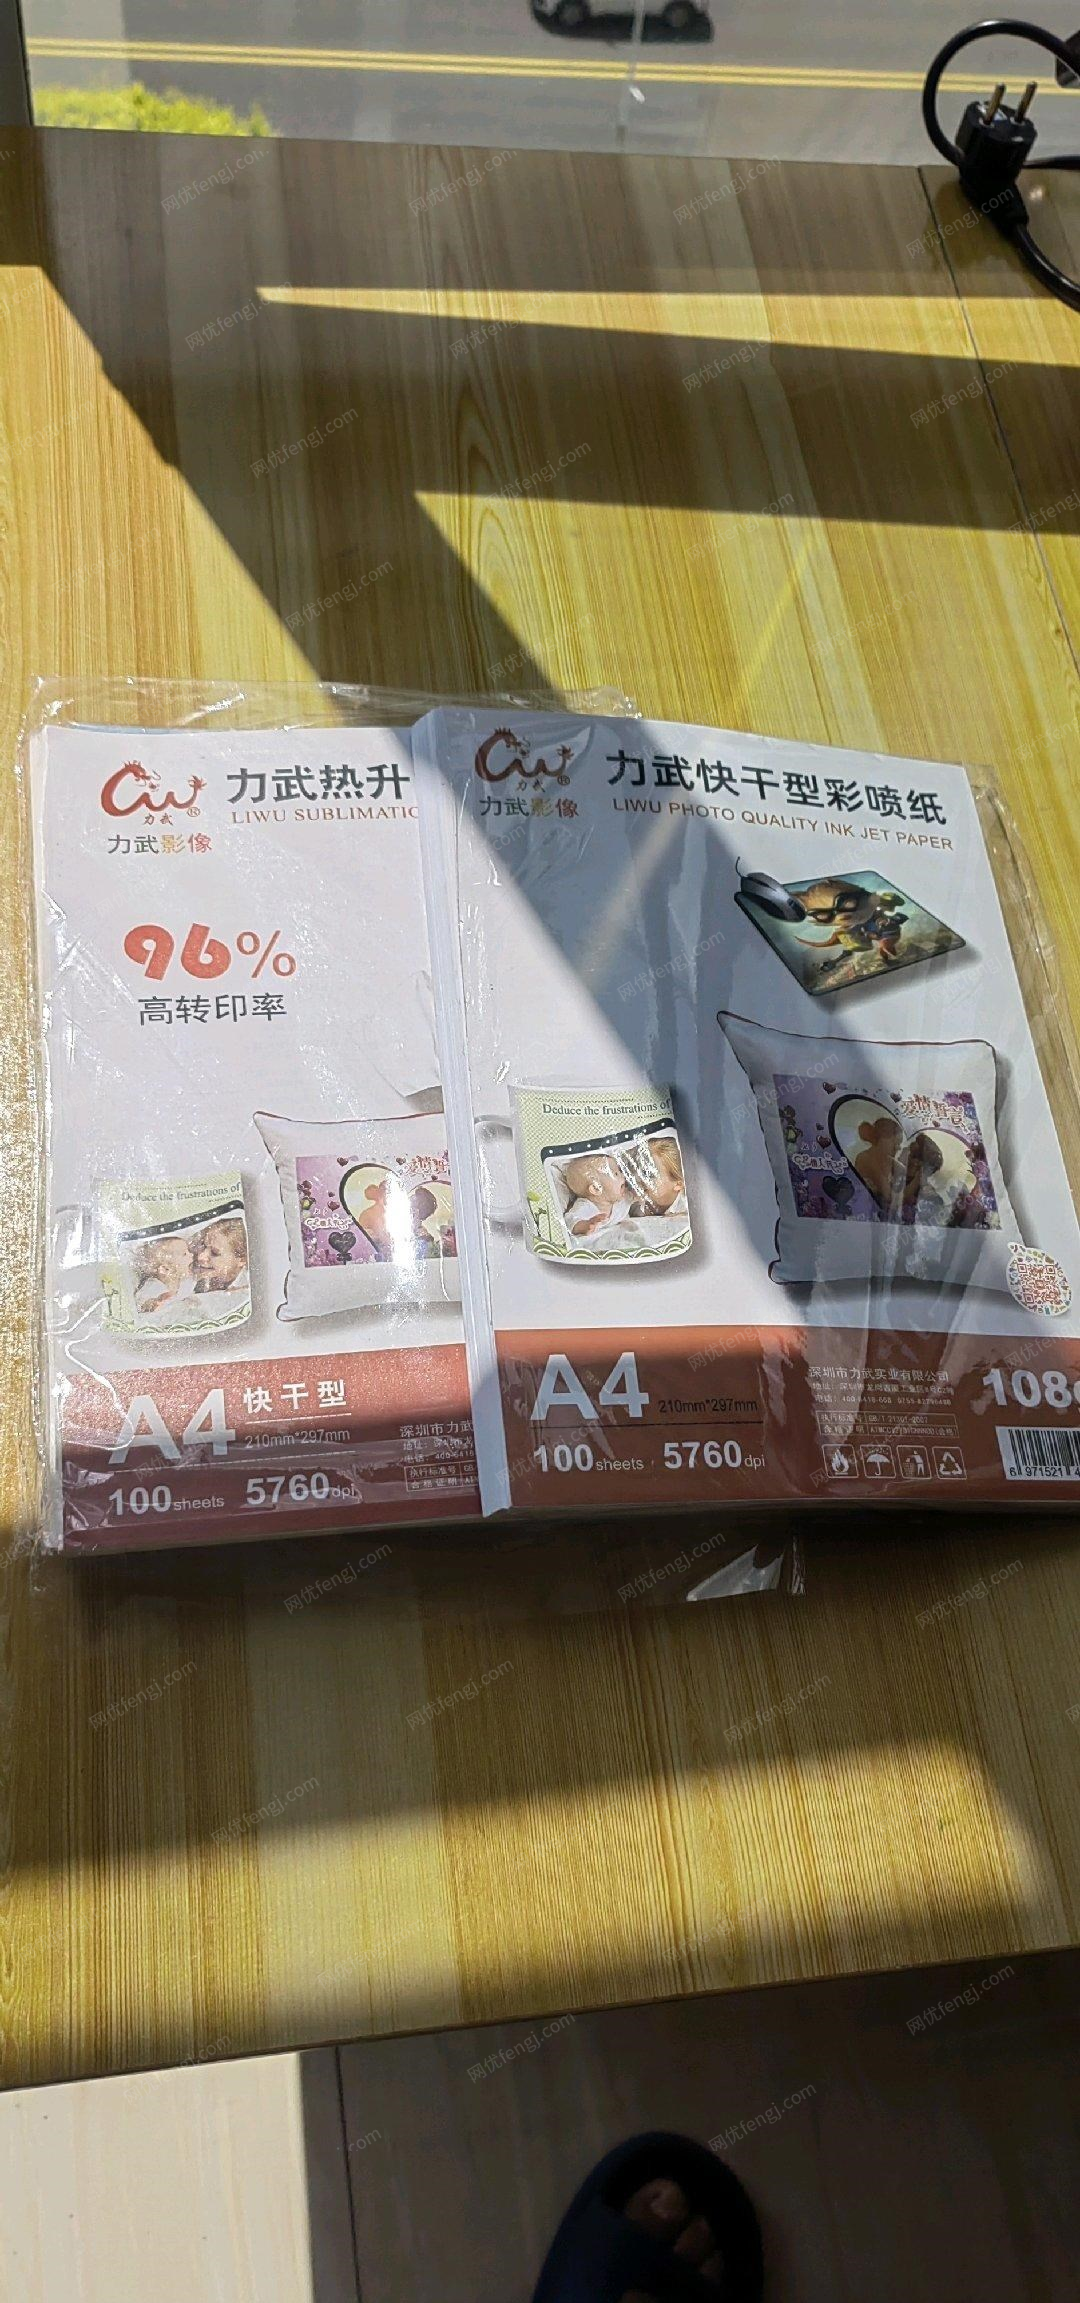 黑龙江绥化diy全套印刷设备便宜出售,几乎全新,另外还有水杯和男女款体恤衫几百件